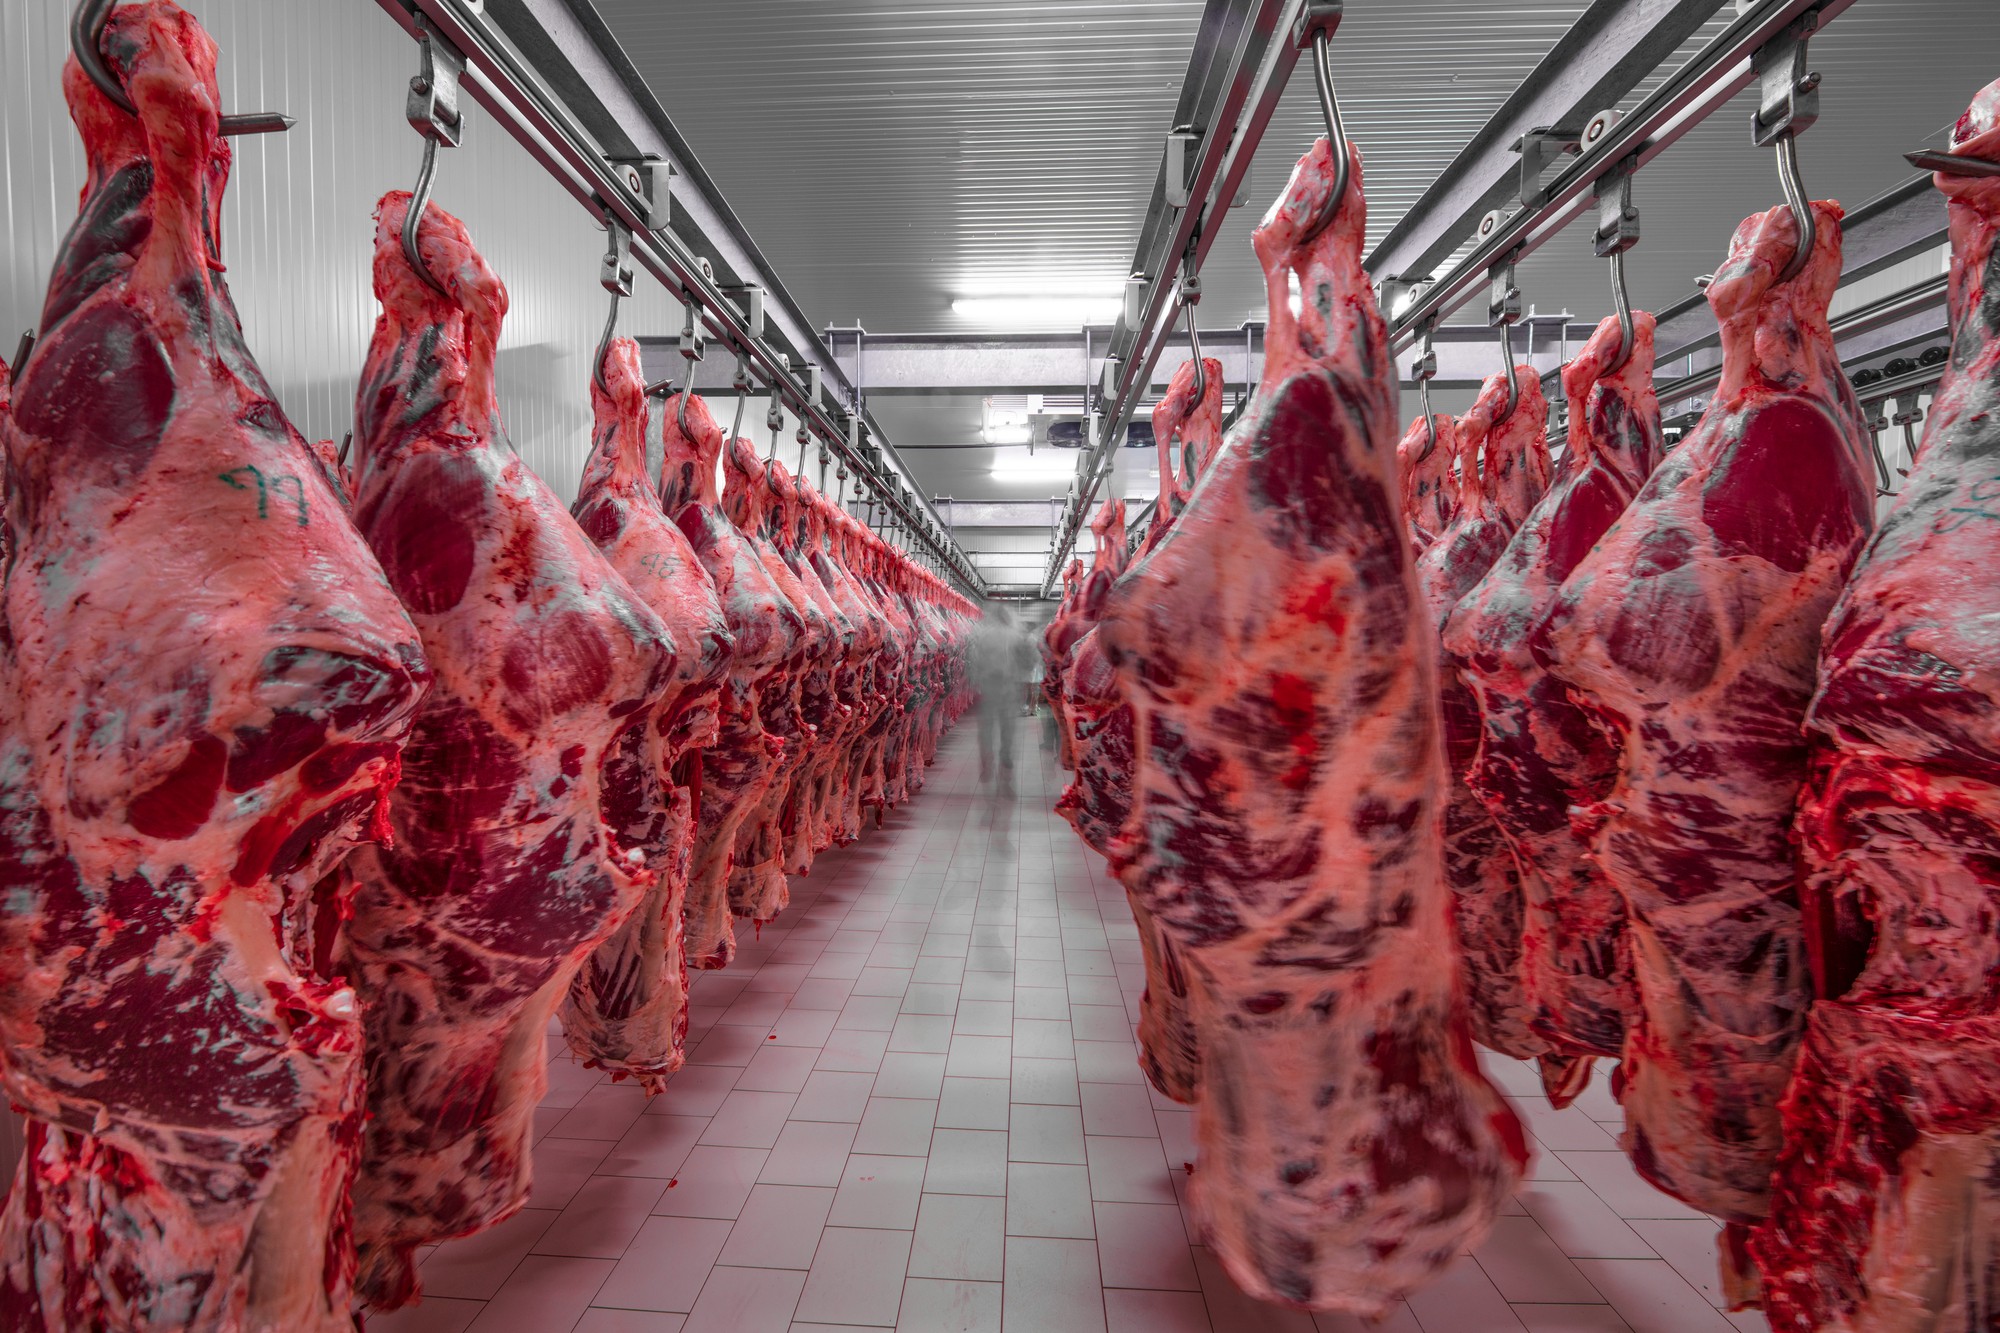 Finanziamenti industria carne: +15% in 4 anni, trend insostenibile